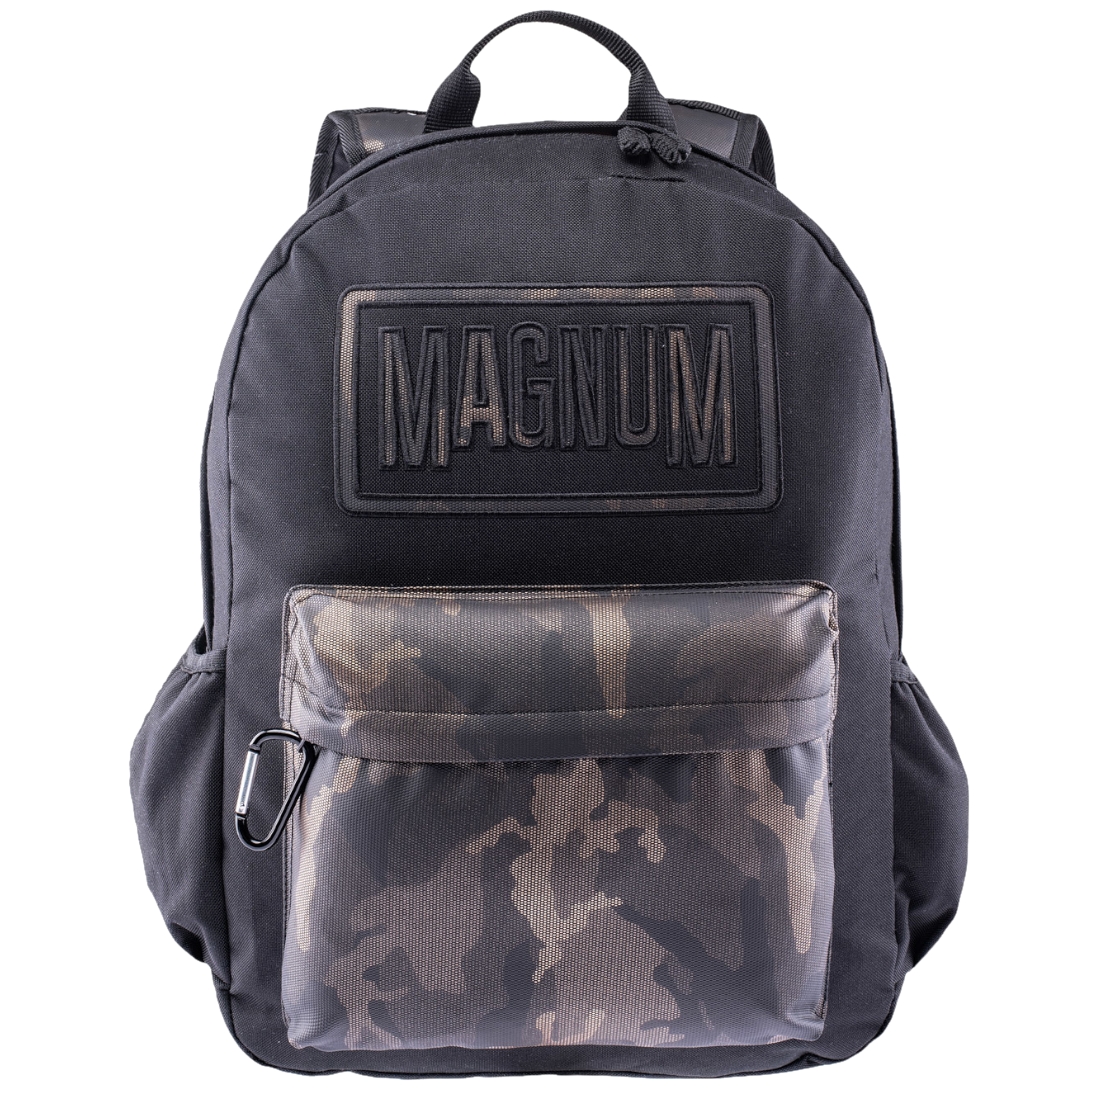 Рюкзак Magnum Magnum Corps, черный